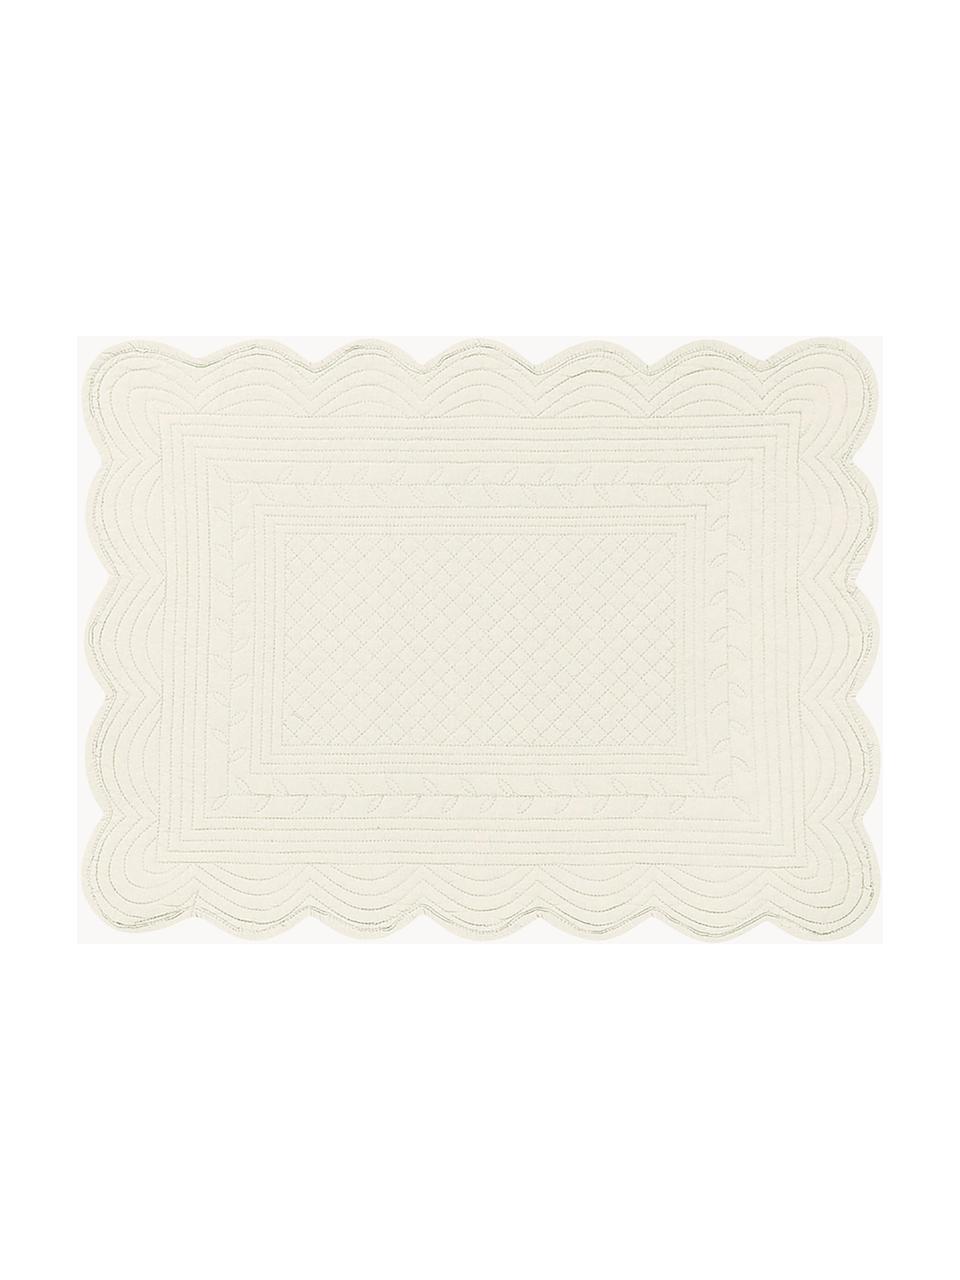 Podkładka Boutis, 2 szt., 100% bawełna, Złamana biel, S 34 x D 48 cm